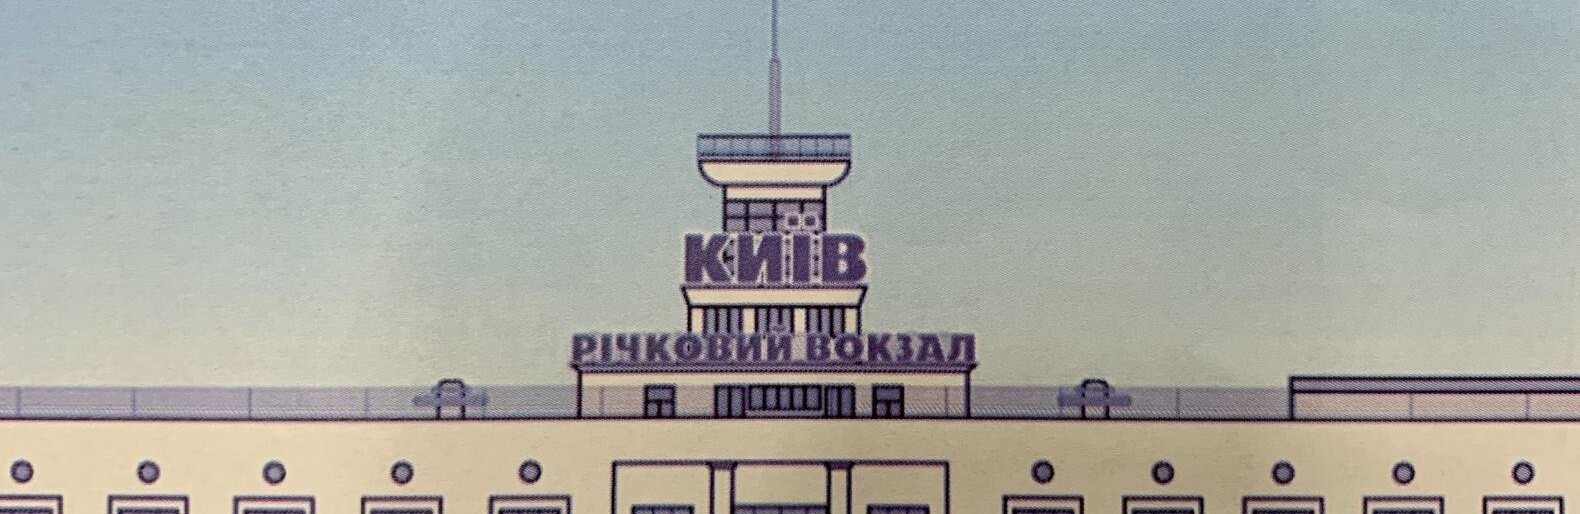 Киевский речной вокзал: когда строился и как выглядит сейчас главное портовое здание столицы, - ФОТО